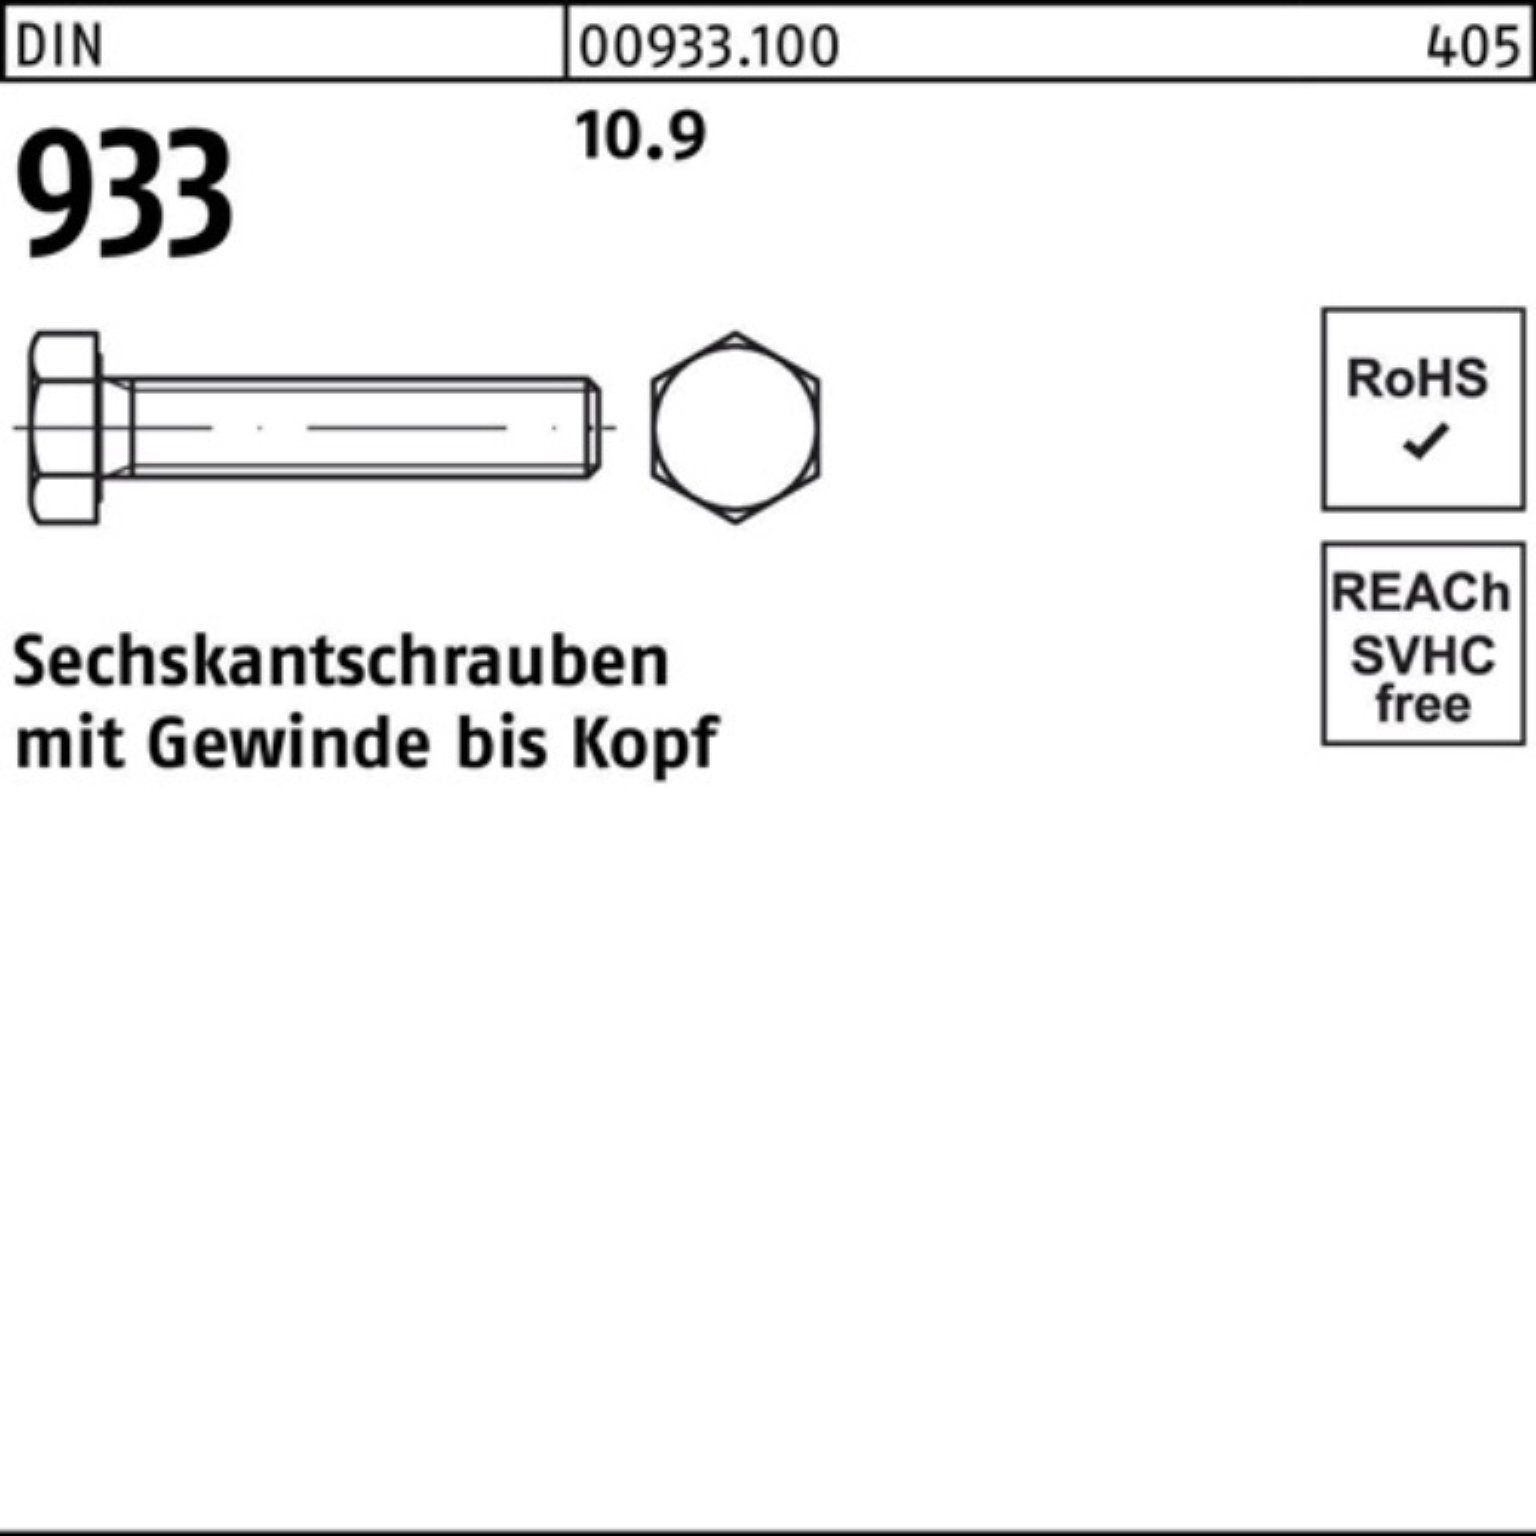 VG Sechskantschraube M18x 93 130 Reyher 100er 10.9 933 Sechskantschraube Stück 25 DIN Pack DIN